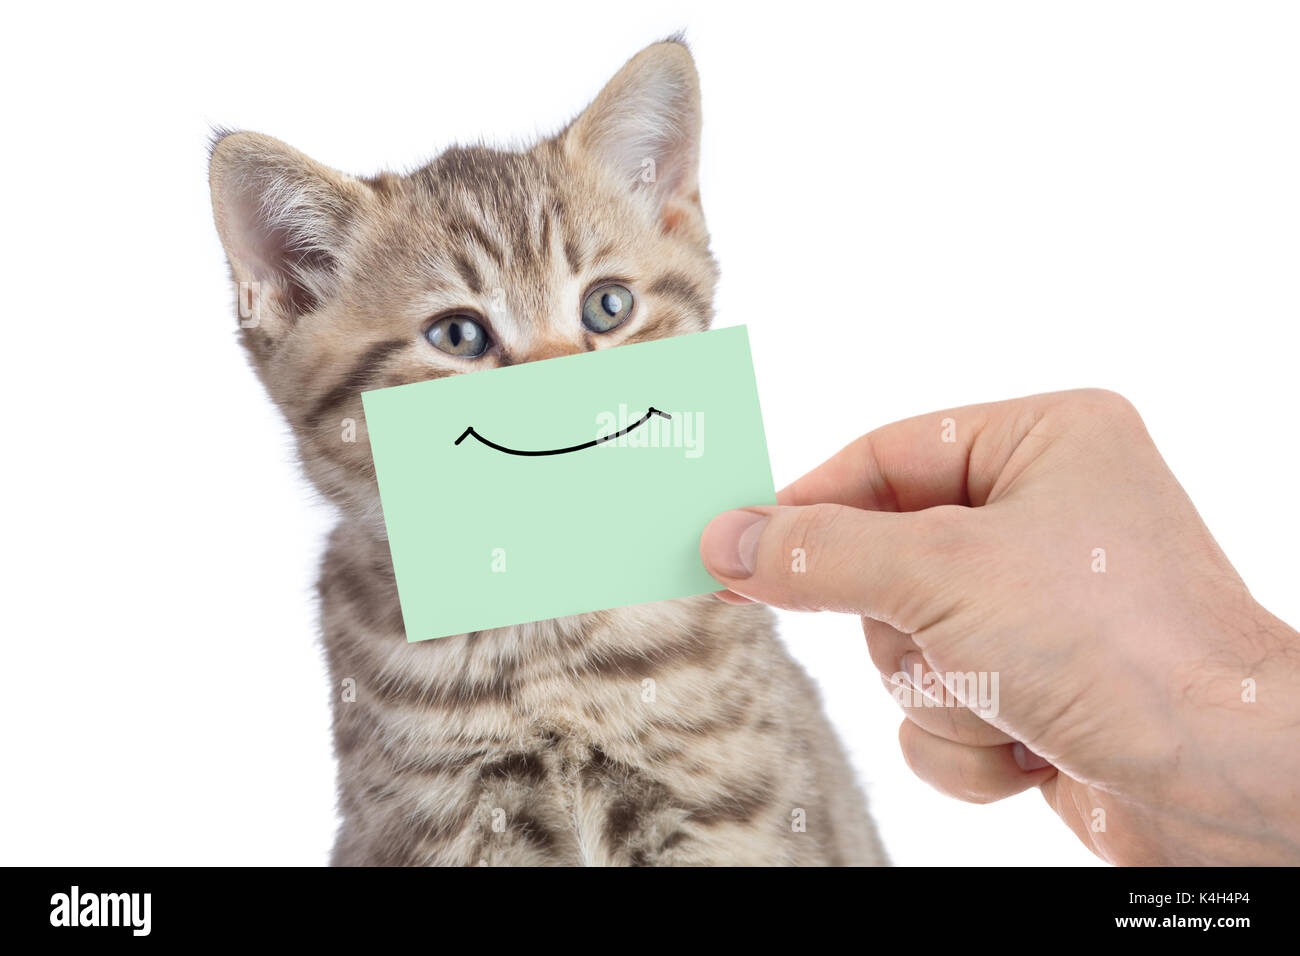 Funny heureux jeune chat portrait avec sourire sur carton vert isolated on white Banque D'Images